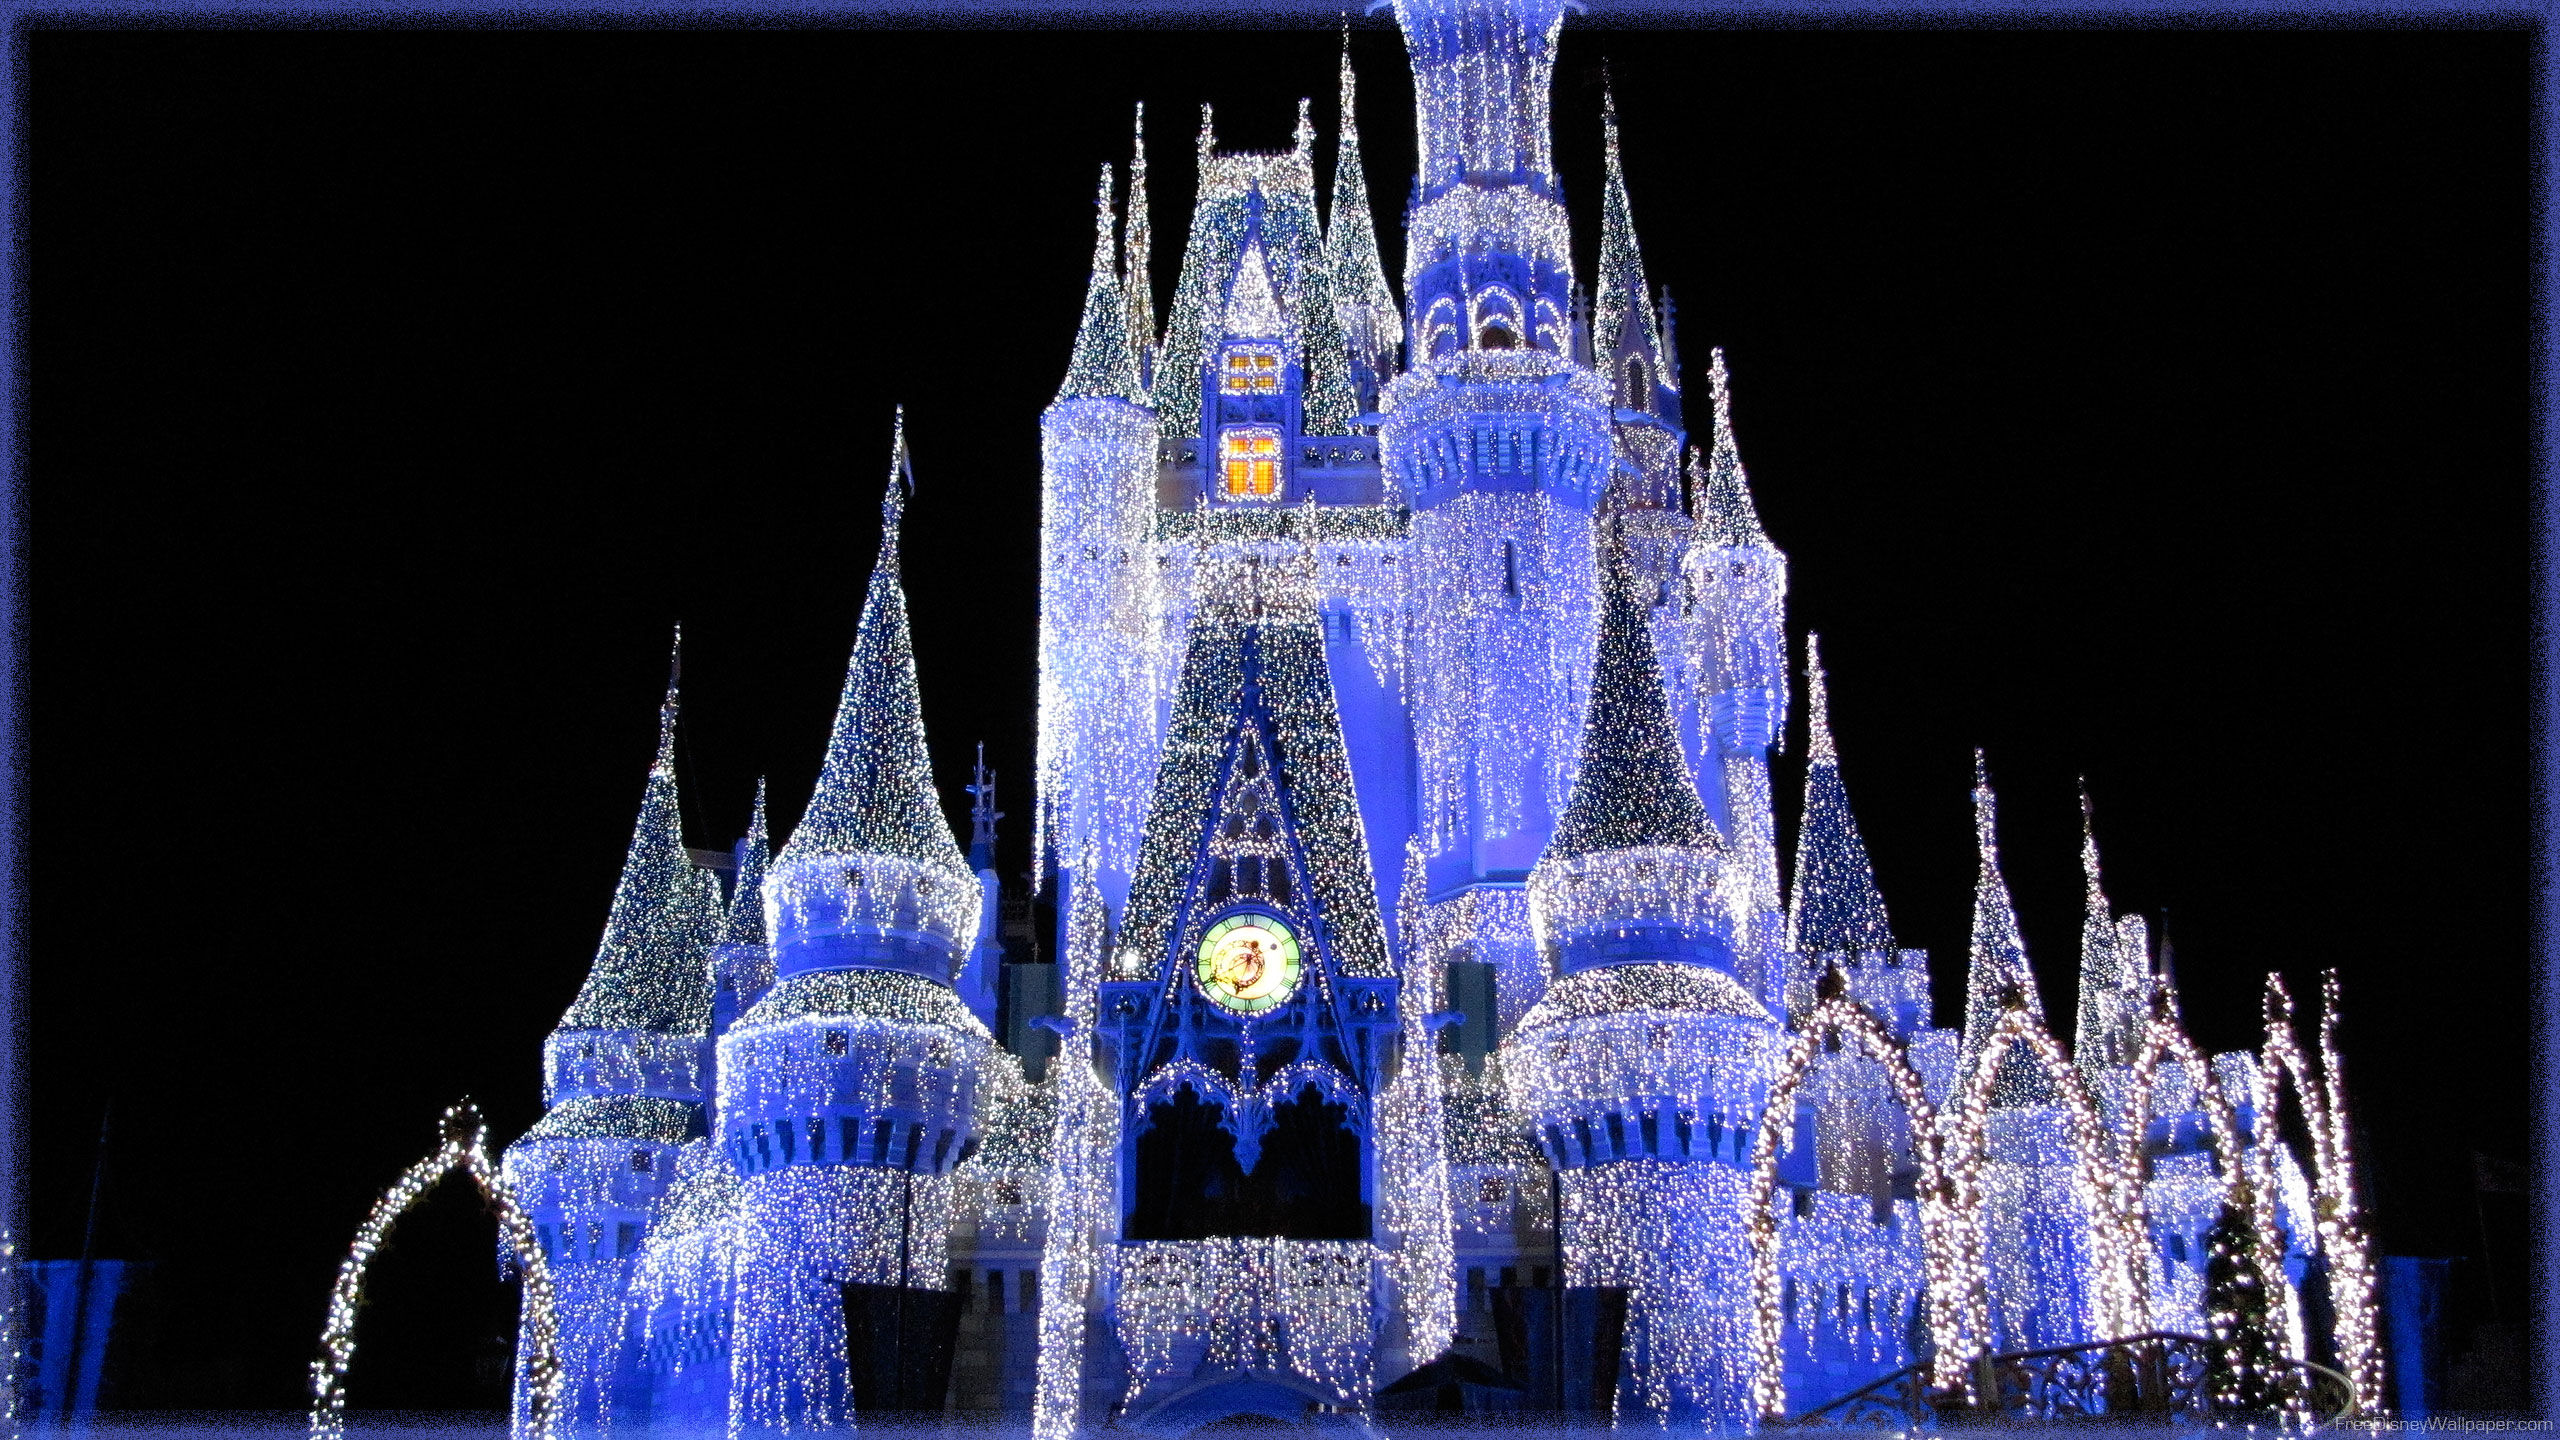 Disney Castle Wallpaper